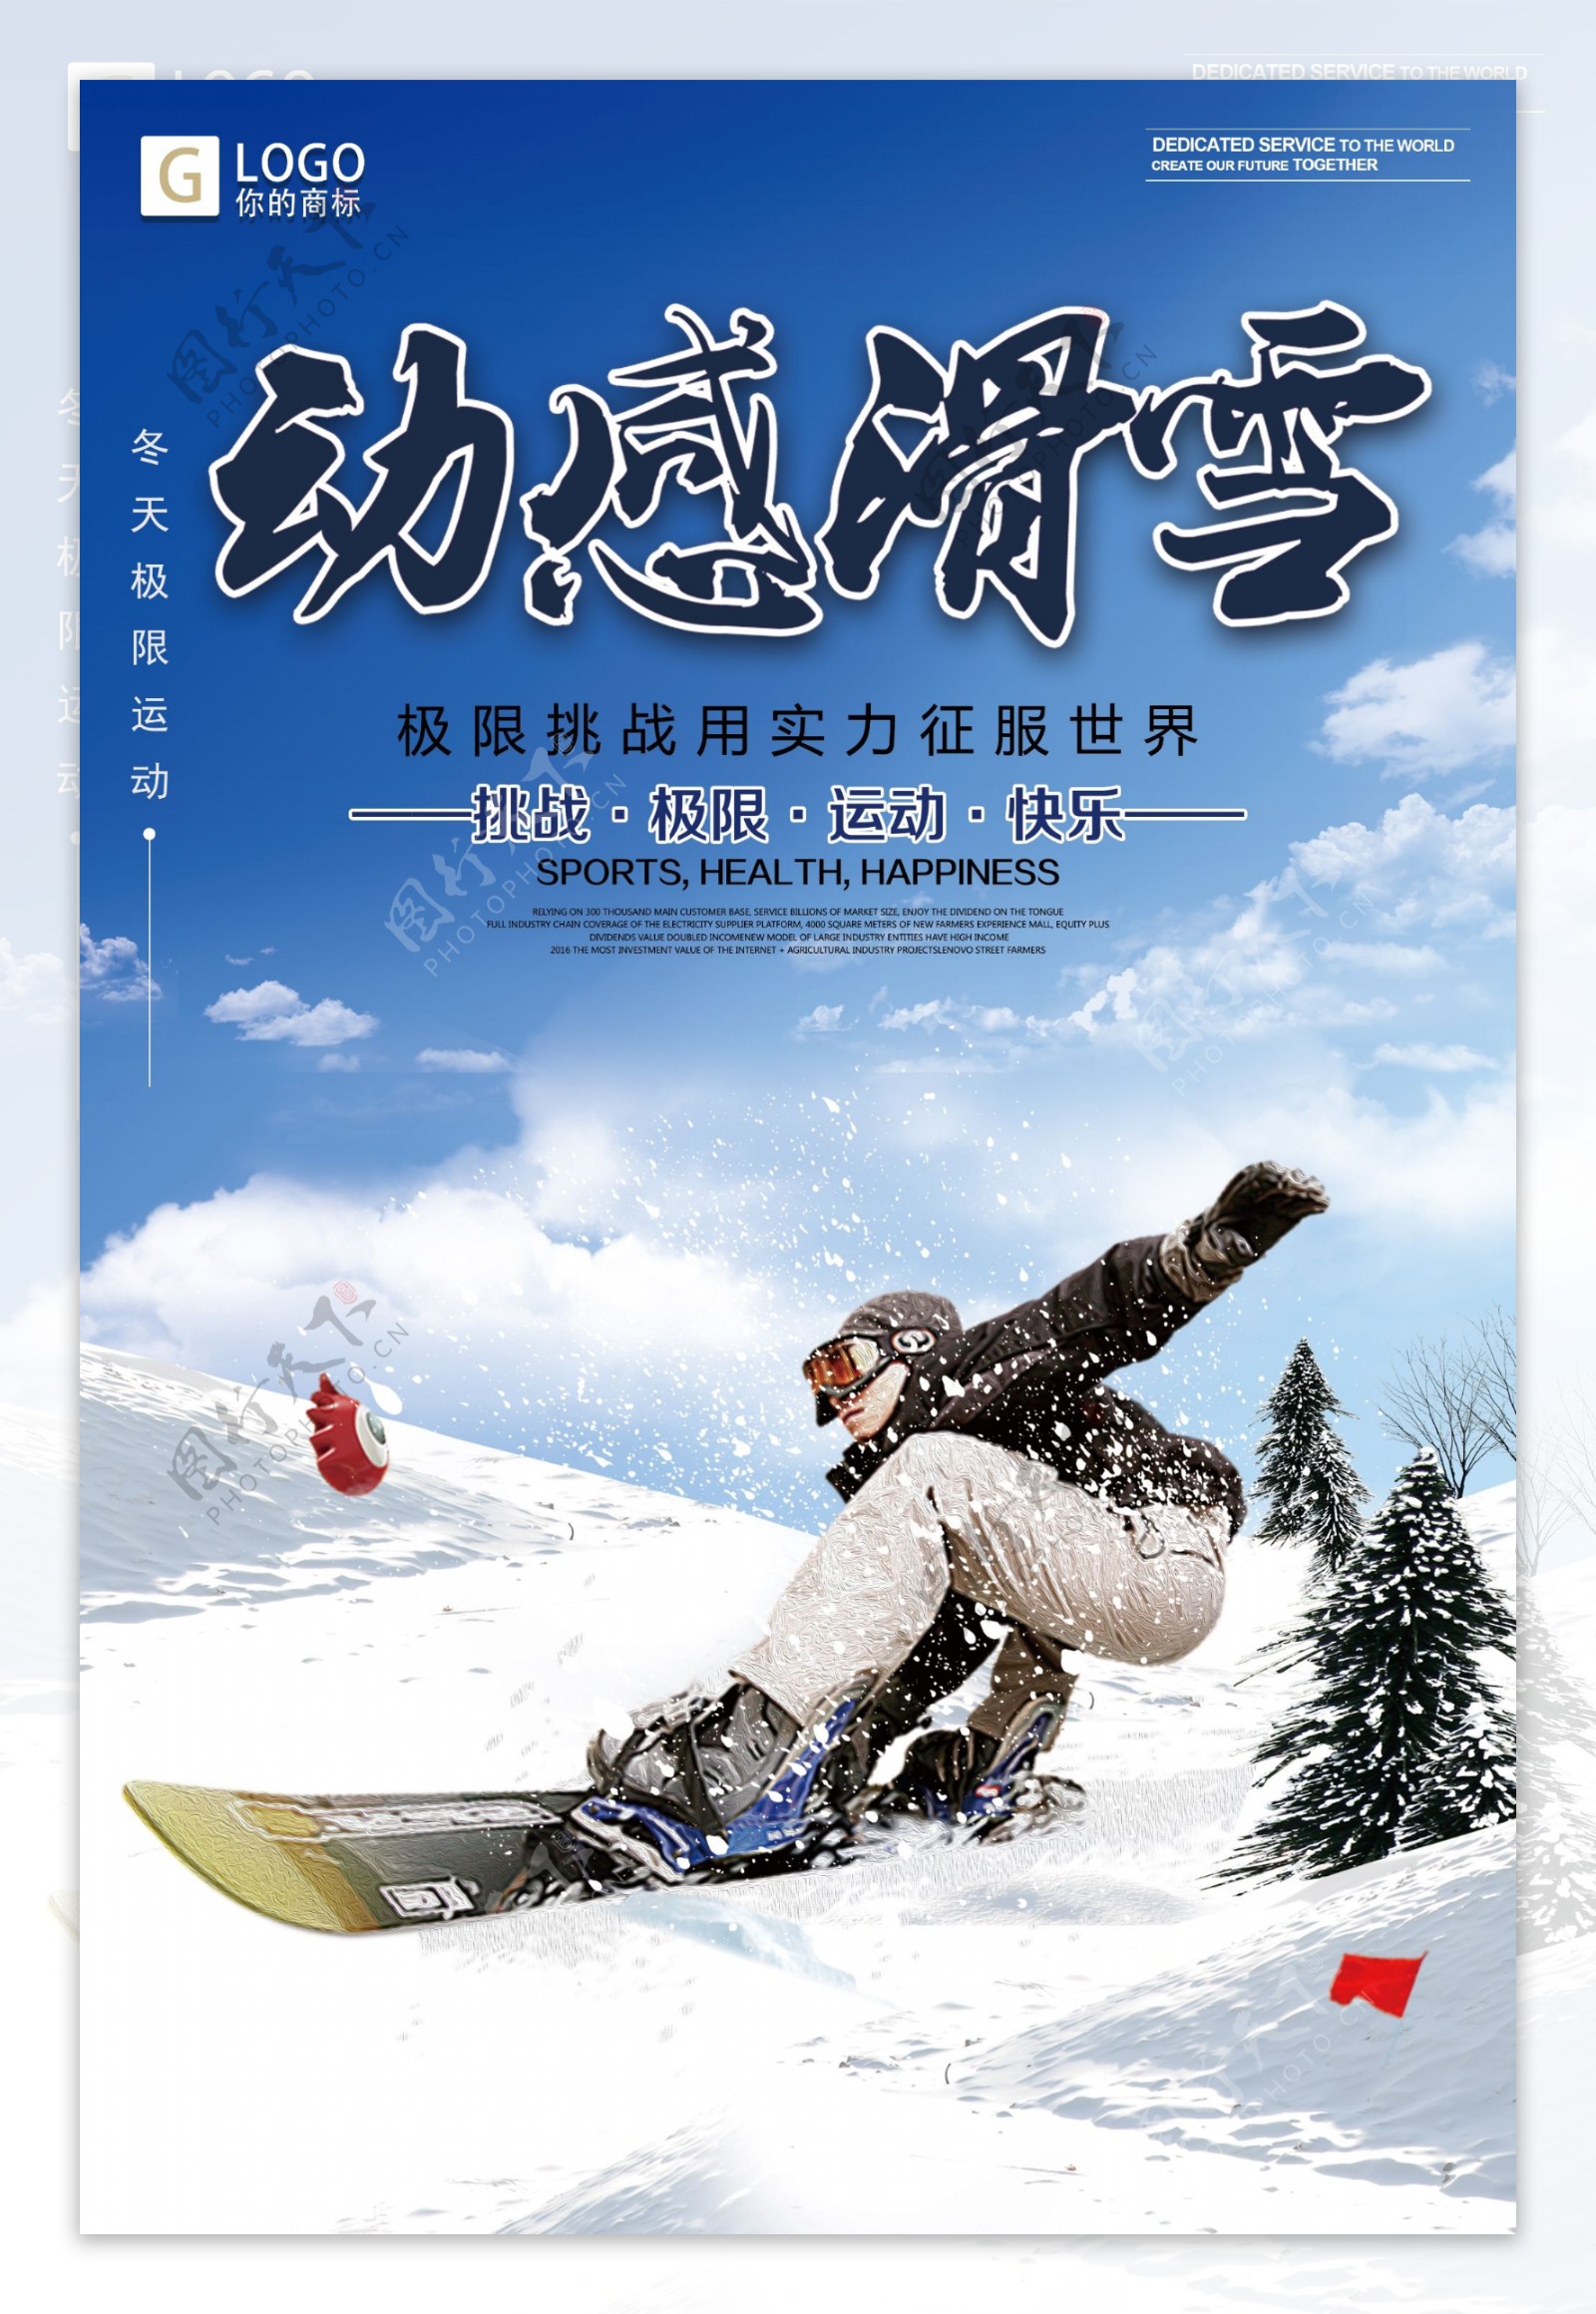 时尚大气滑雪创意宣传海报设计